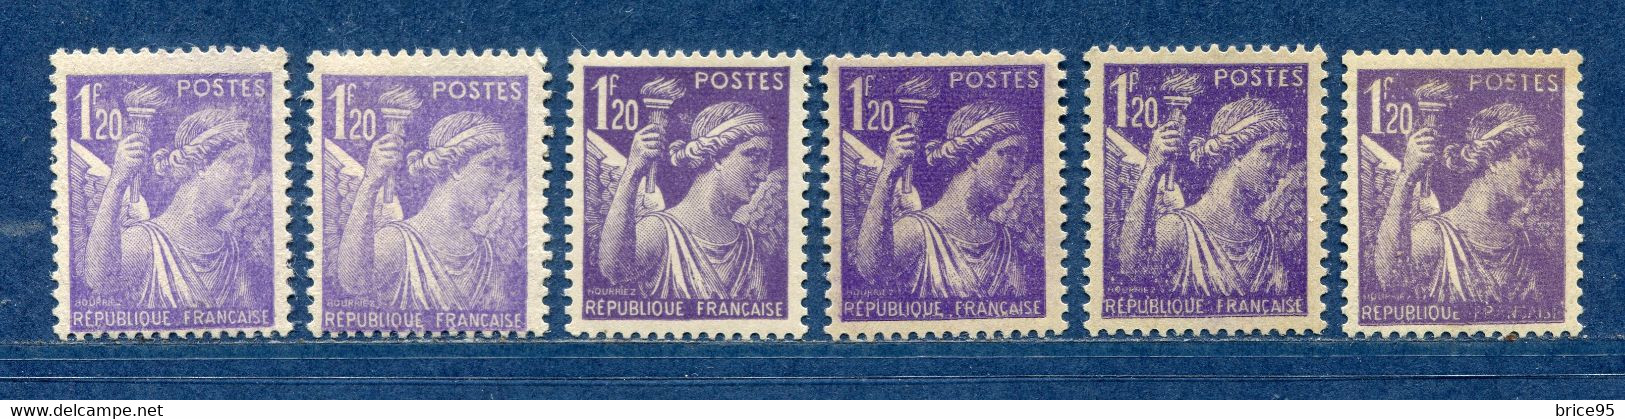 ⭐ France - Variété - YT N° 651 - Couleurs - Pétouilles - Neuf Sans Charnière - 1944 ⭐ - Unused Stamps